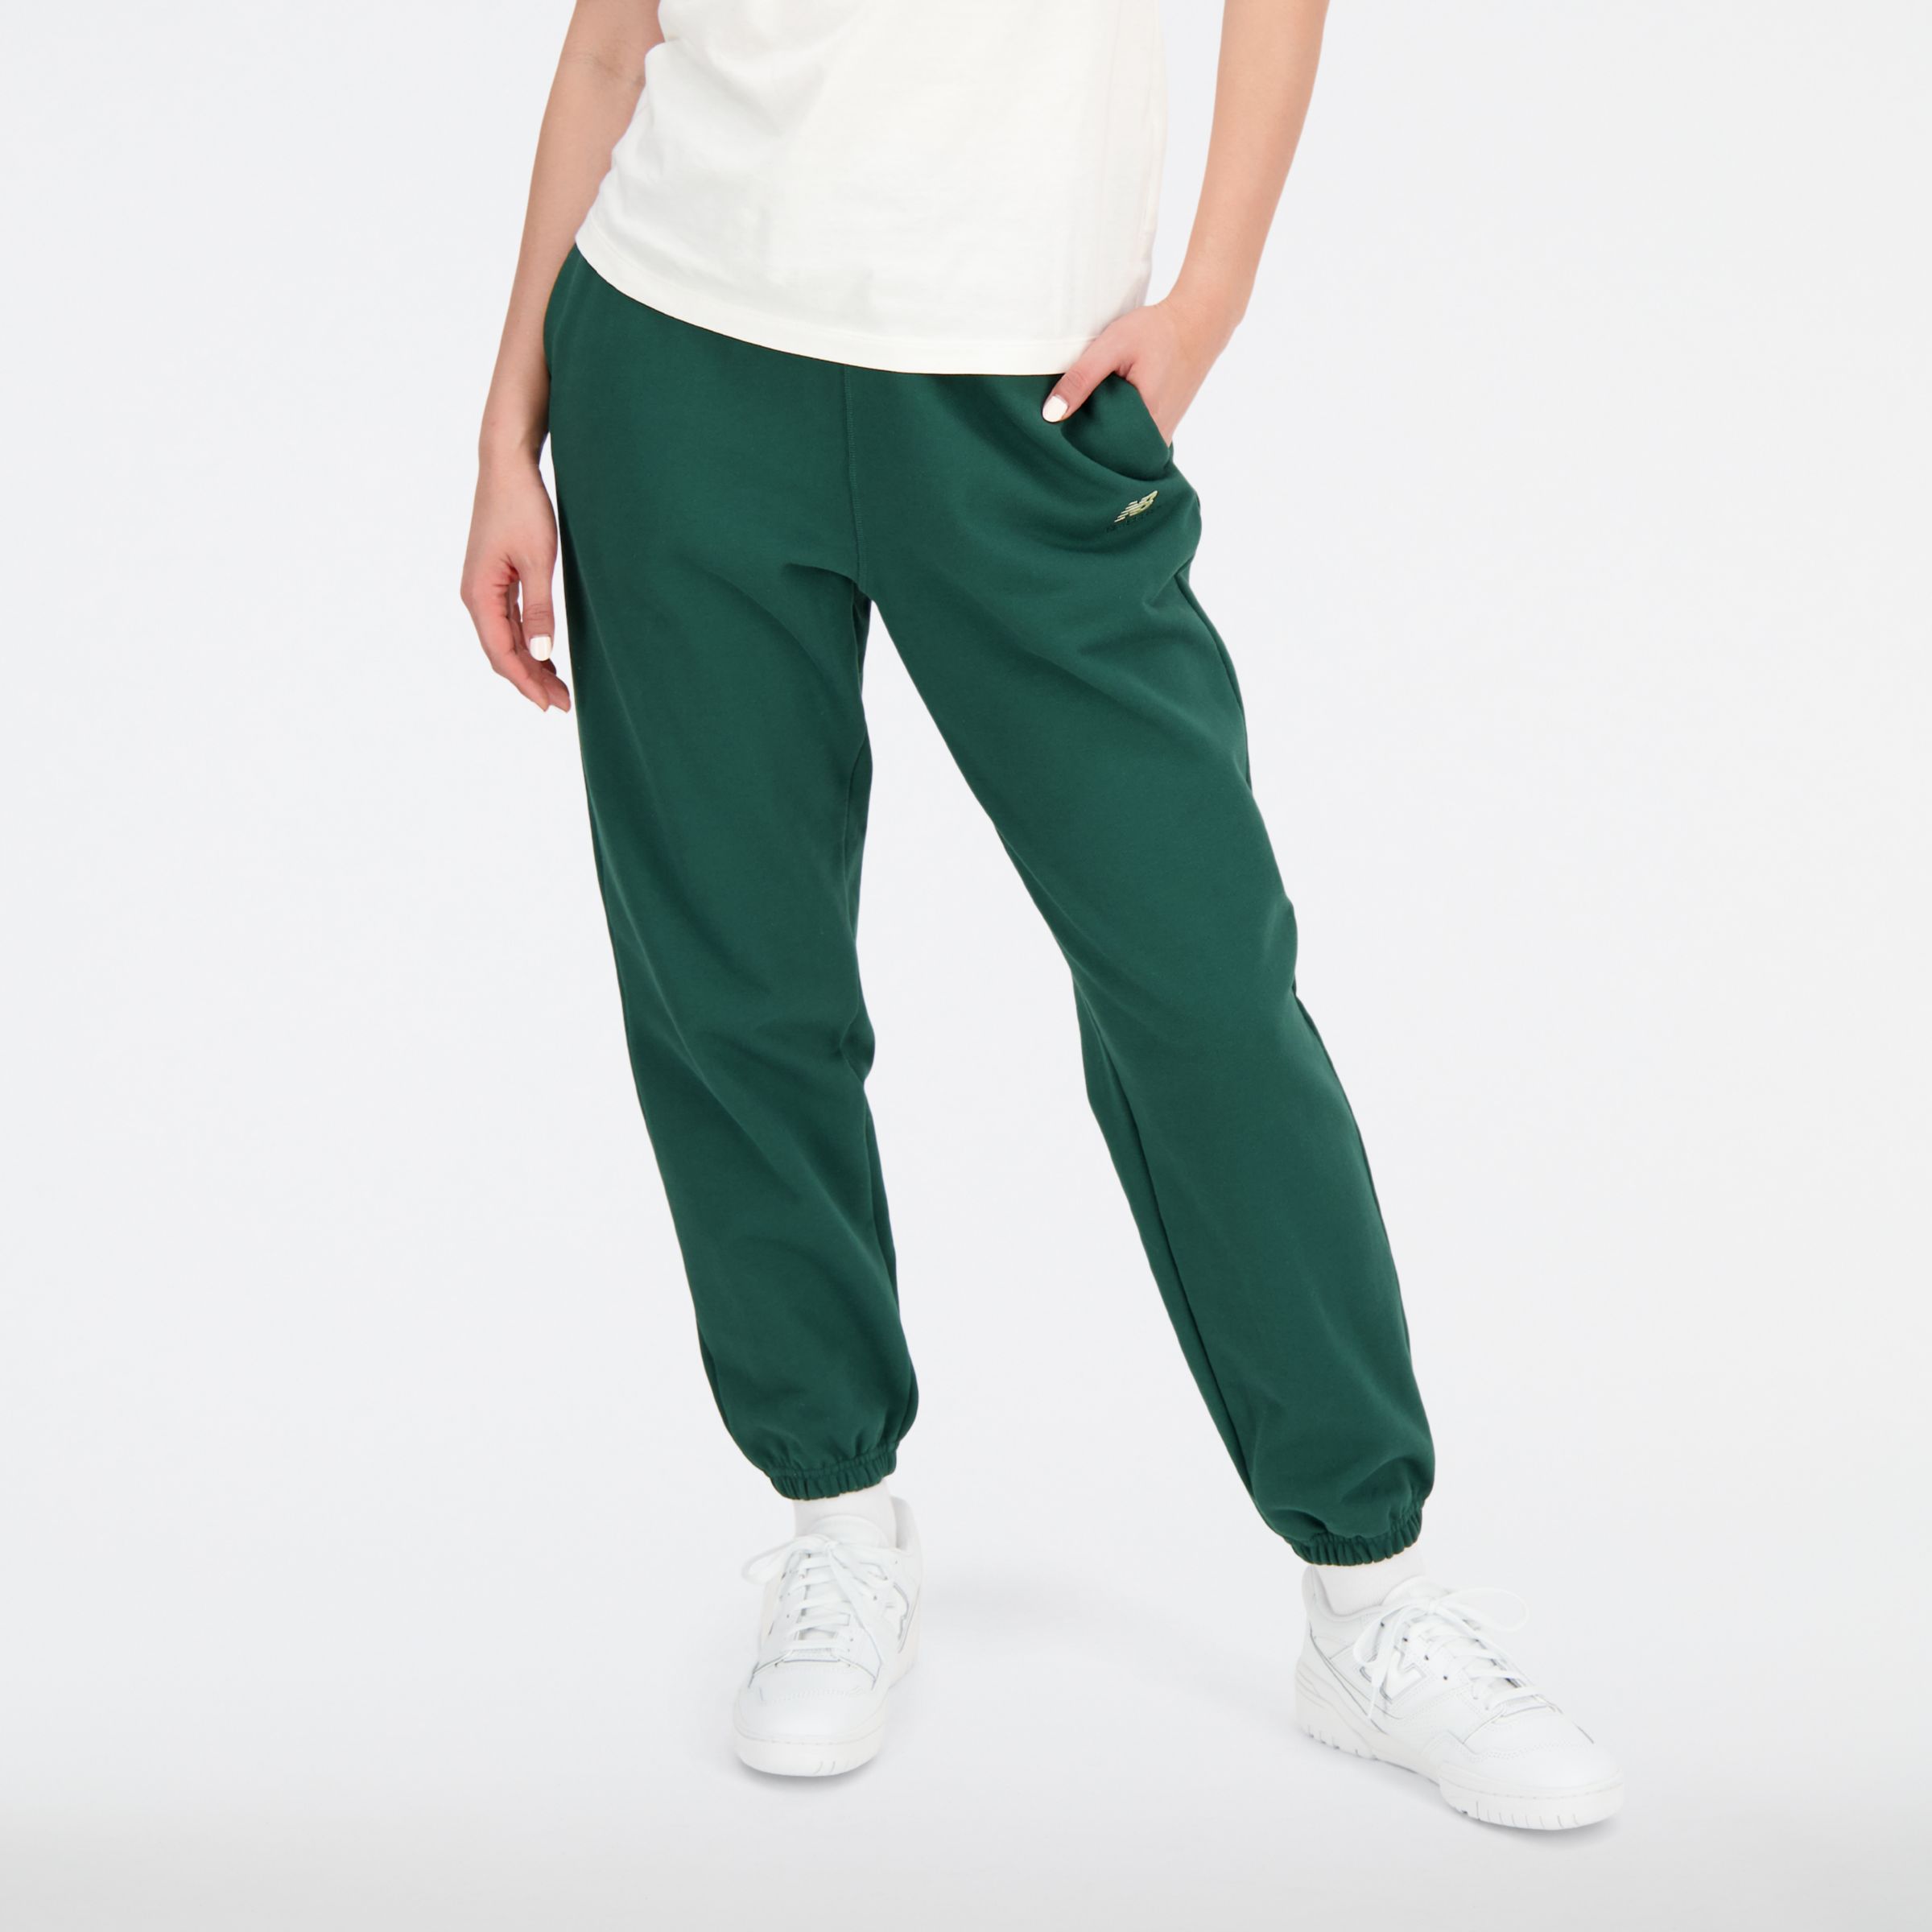 

New Balance Women's Sport Essentials Premium Fleece Pant Green - Green